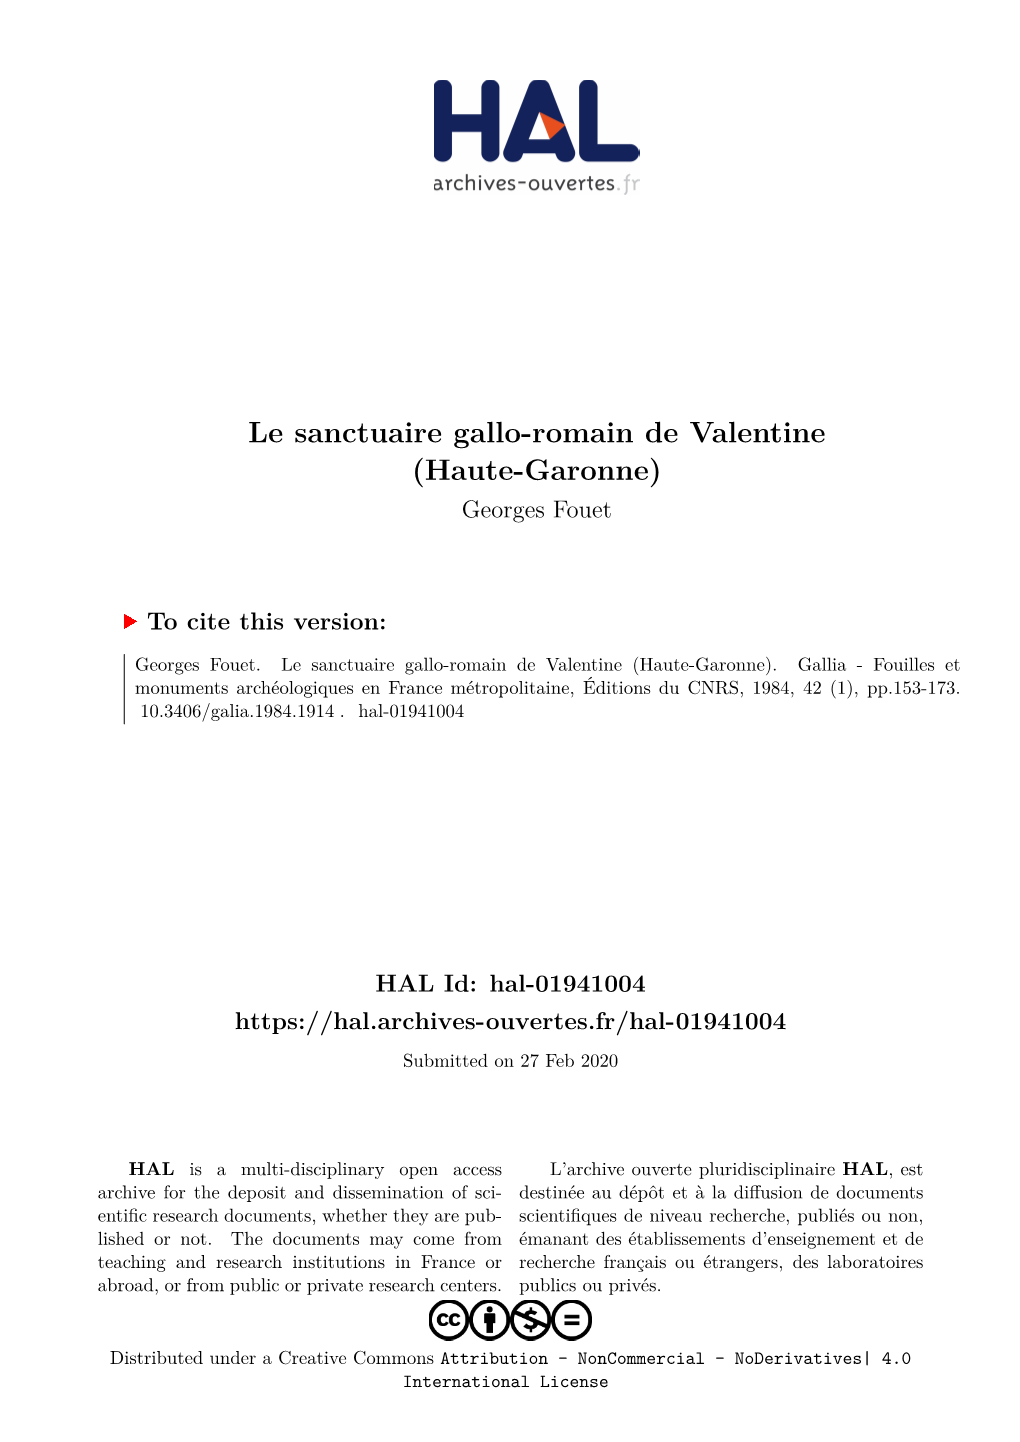 Le Sanctuaire Gallo-Romain De Valentine (Haute-Garonne) Georges Fouet